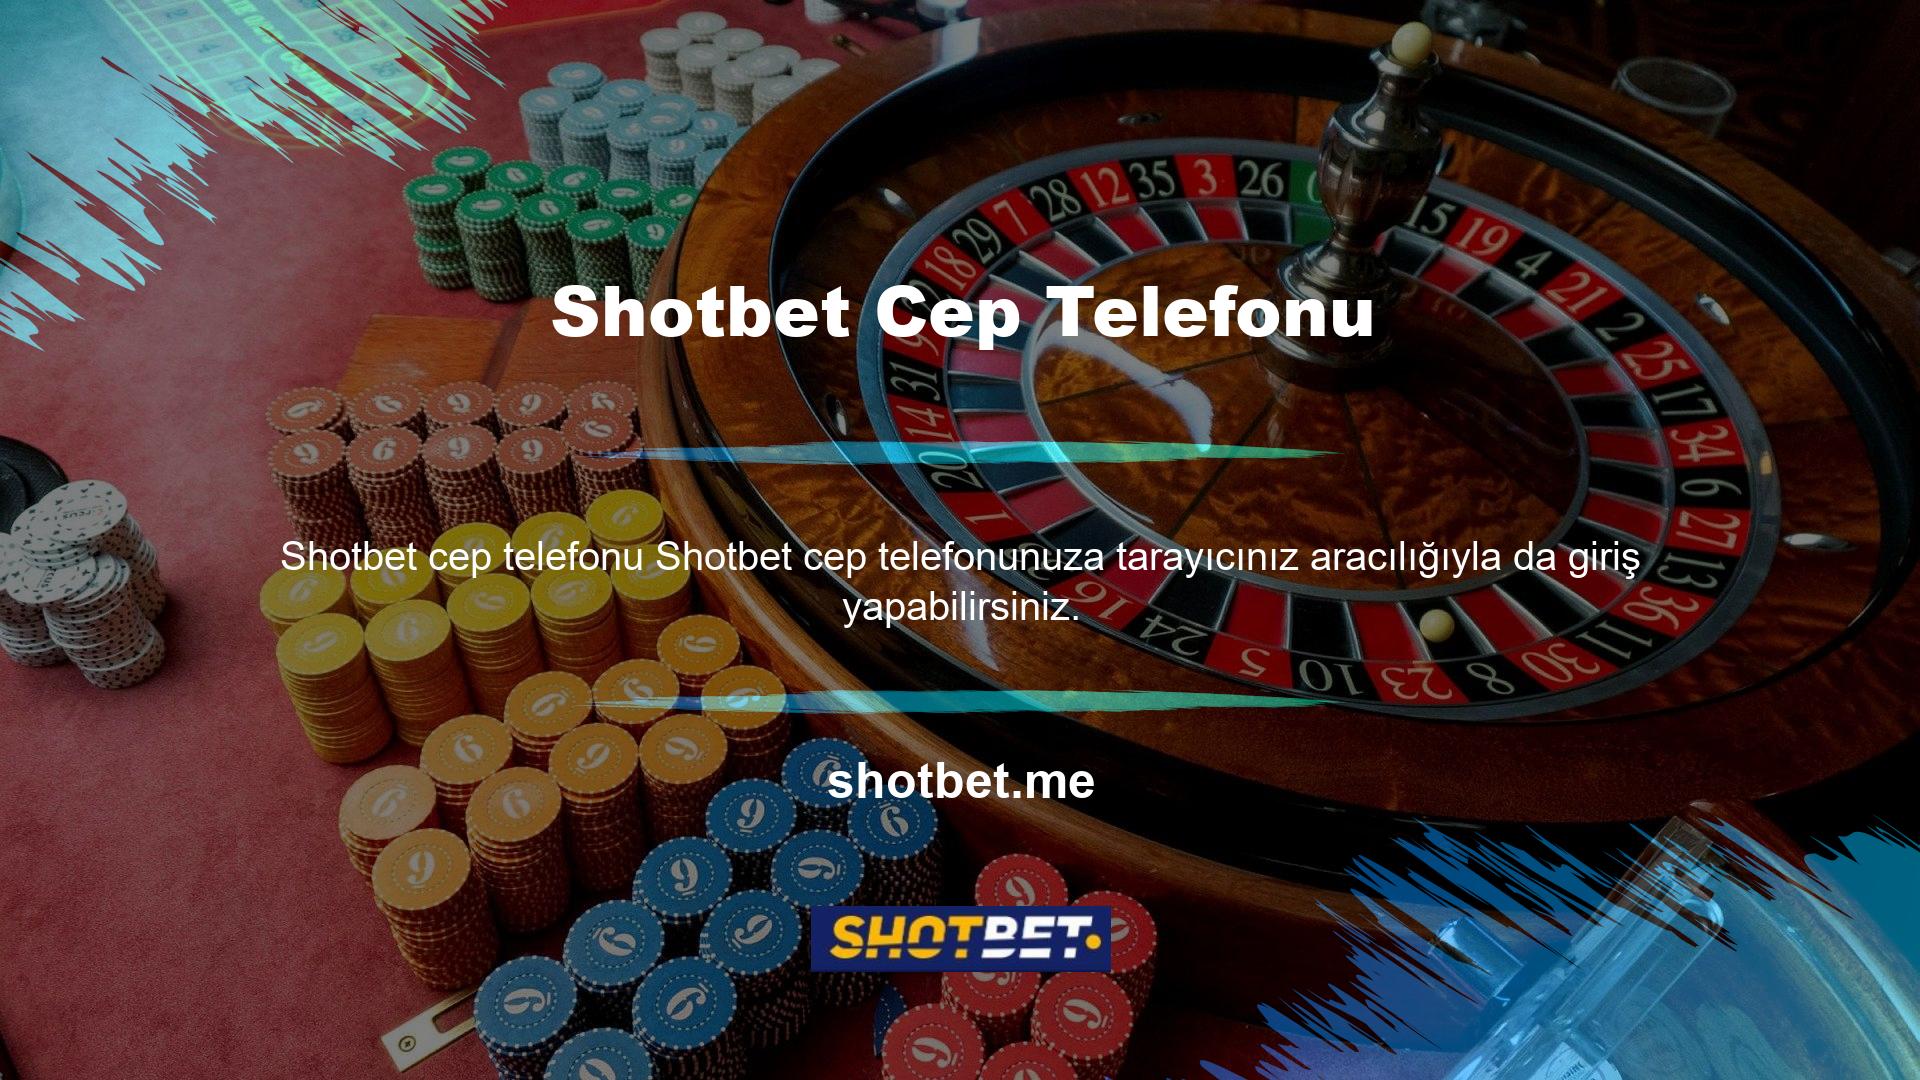 Bahis tutkunları öncelikle telefon üzerinden bahis oynasa da Shotbet her türden müşteriye hitap etmektedir